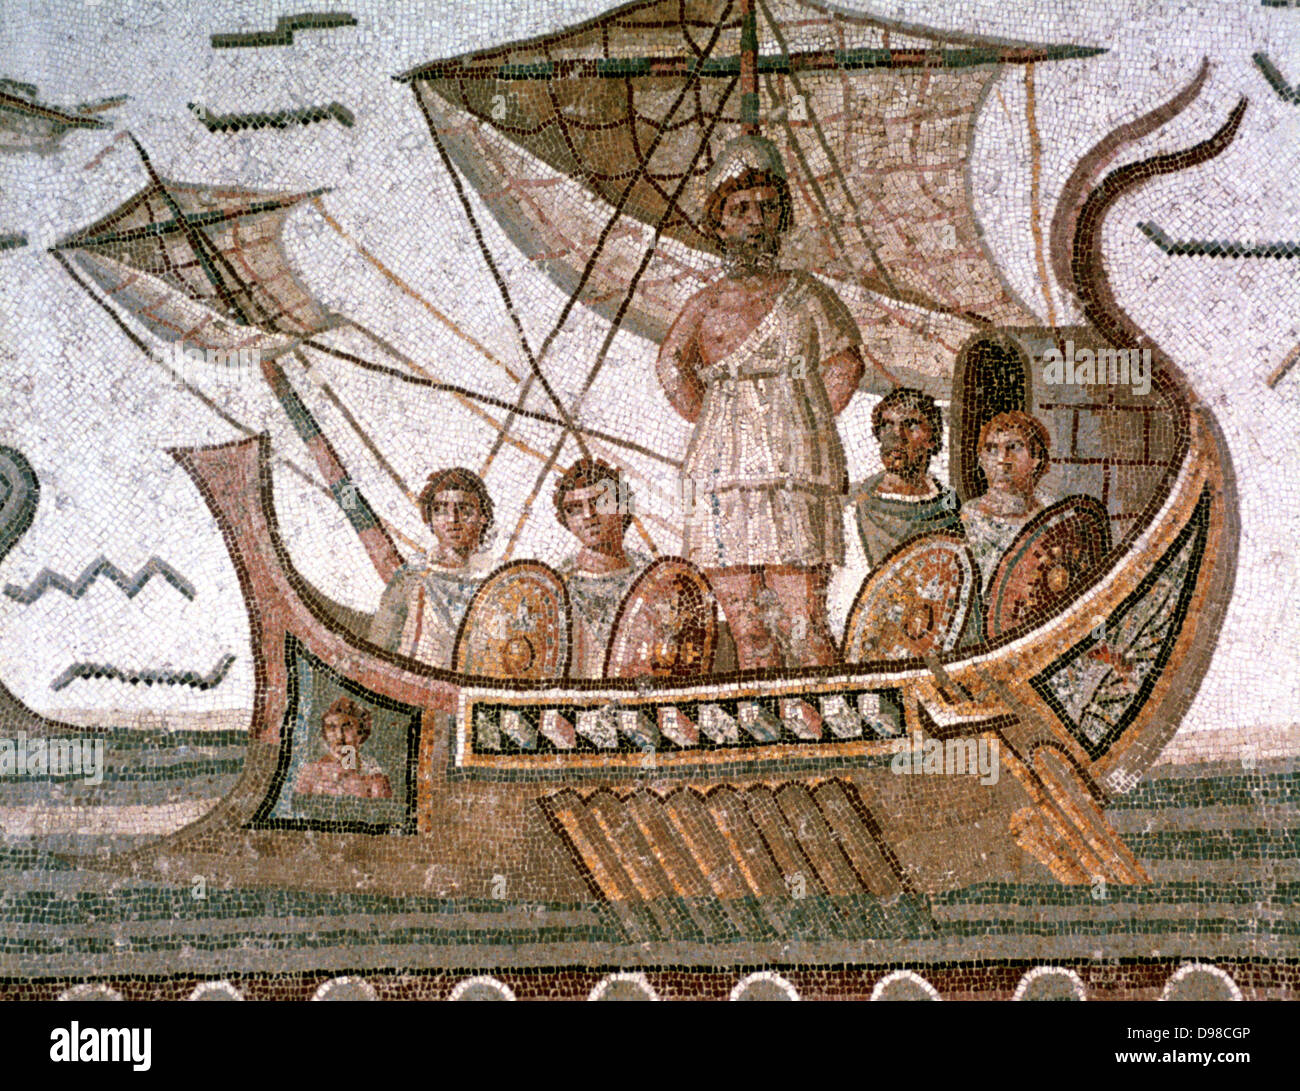 Ulysse (Odysseus) attaché au mât de son navire pour le sauver de la sirène. "Odyssée" d'Homère, poème Grec épique. Mosaïque romaine, 3e siècle, Tunis. Banque D'Images